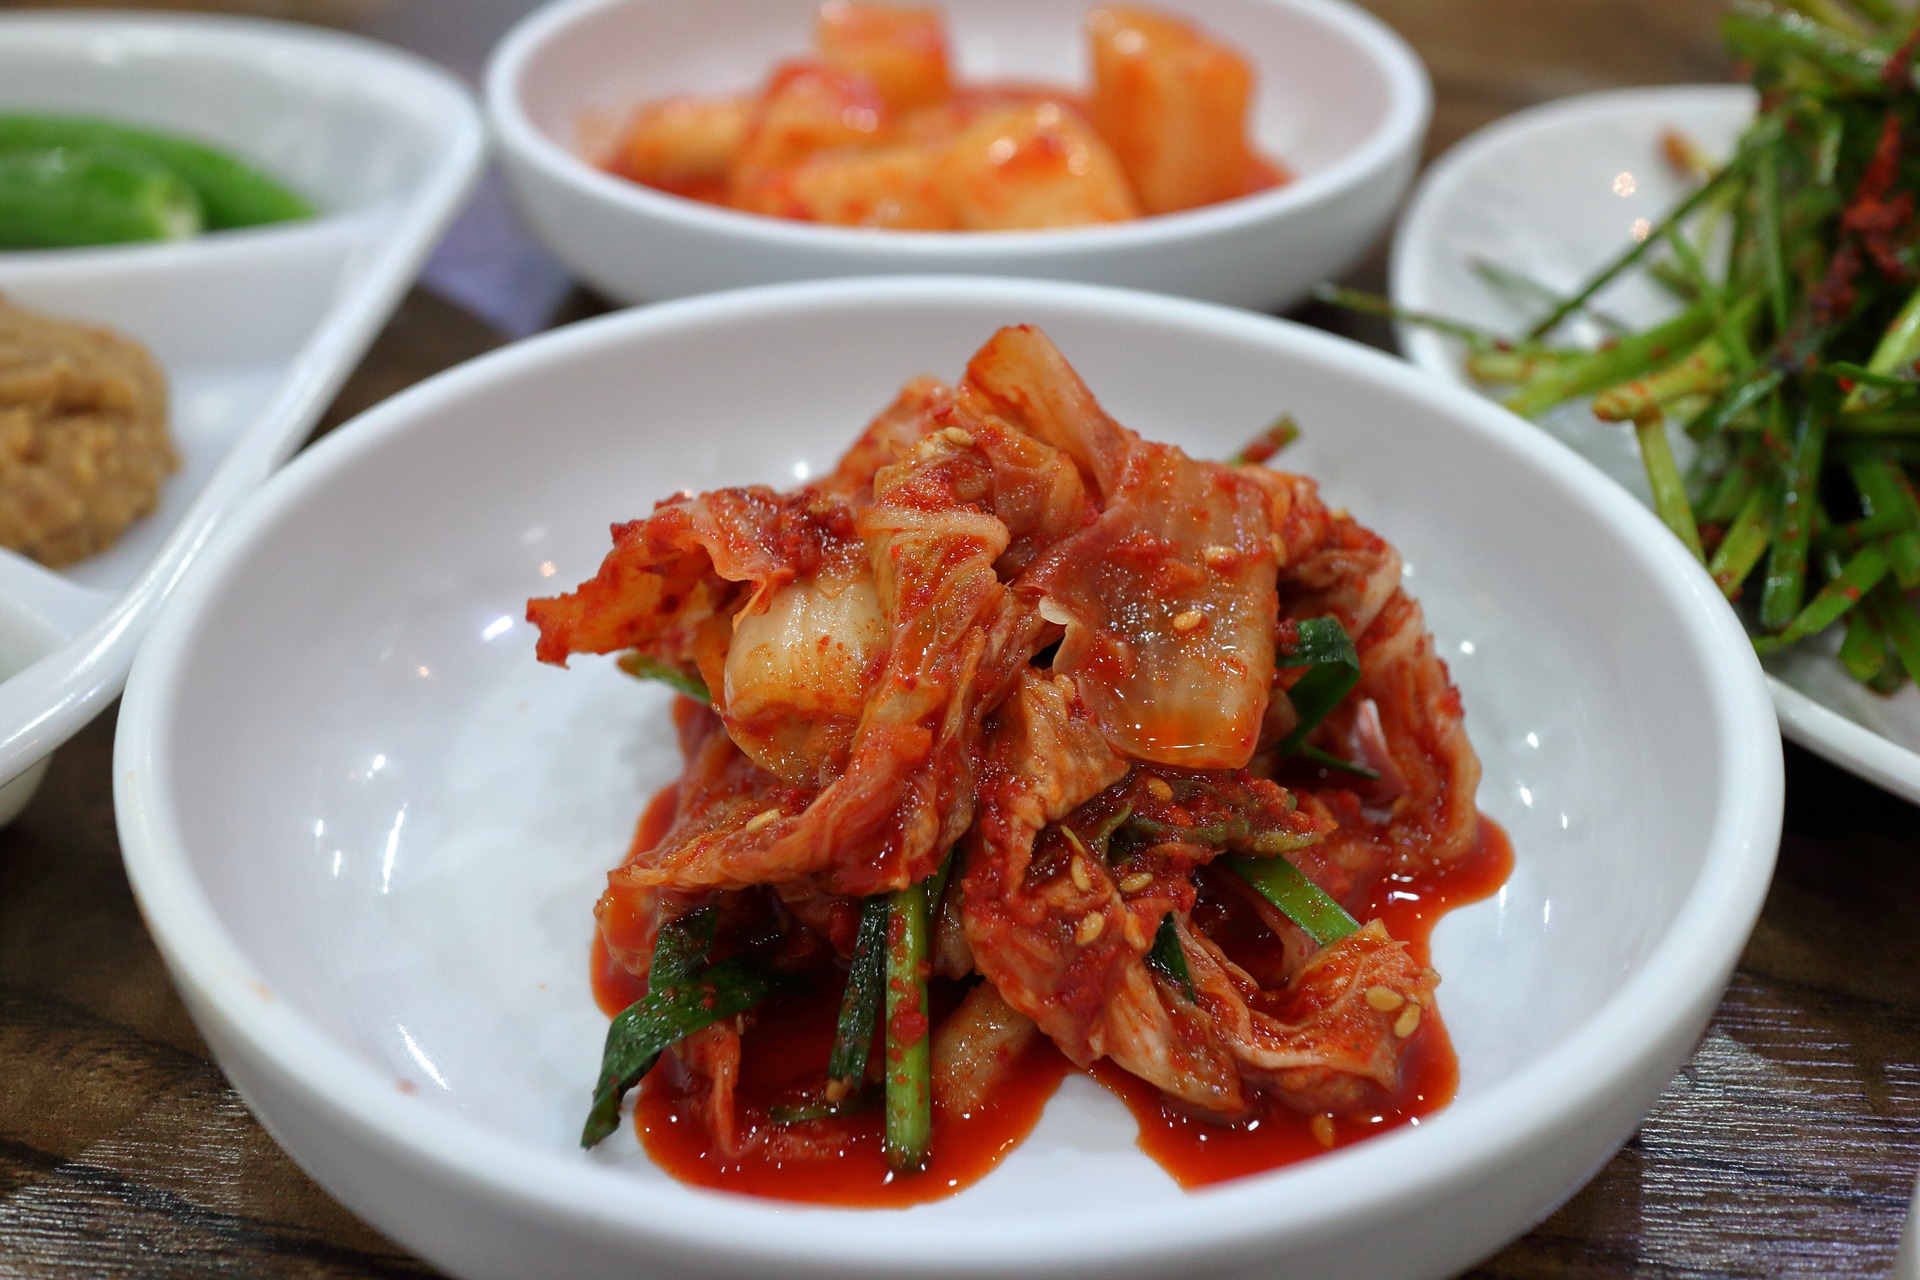 Kimchi dish